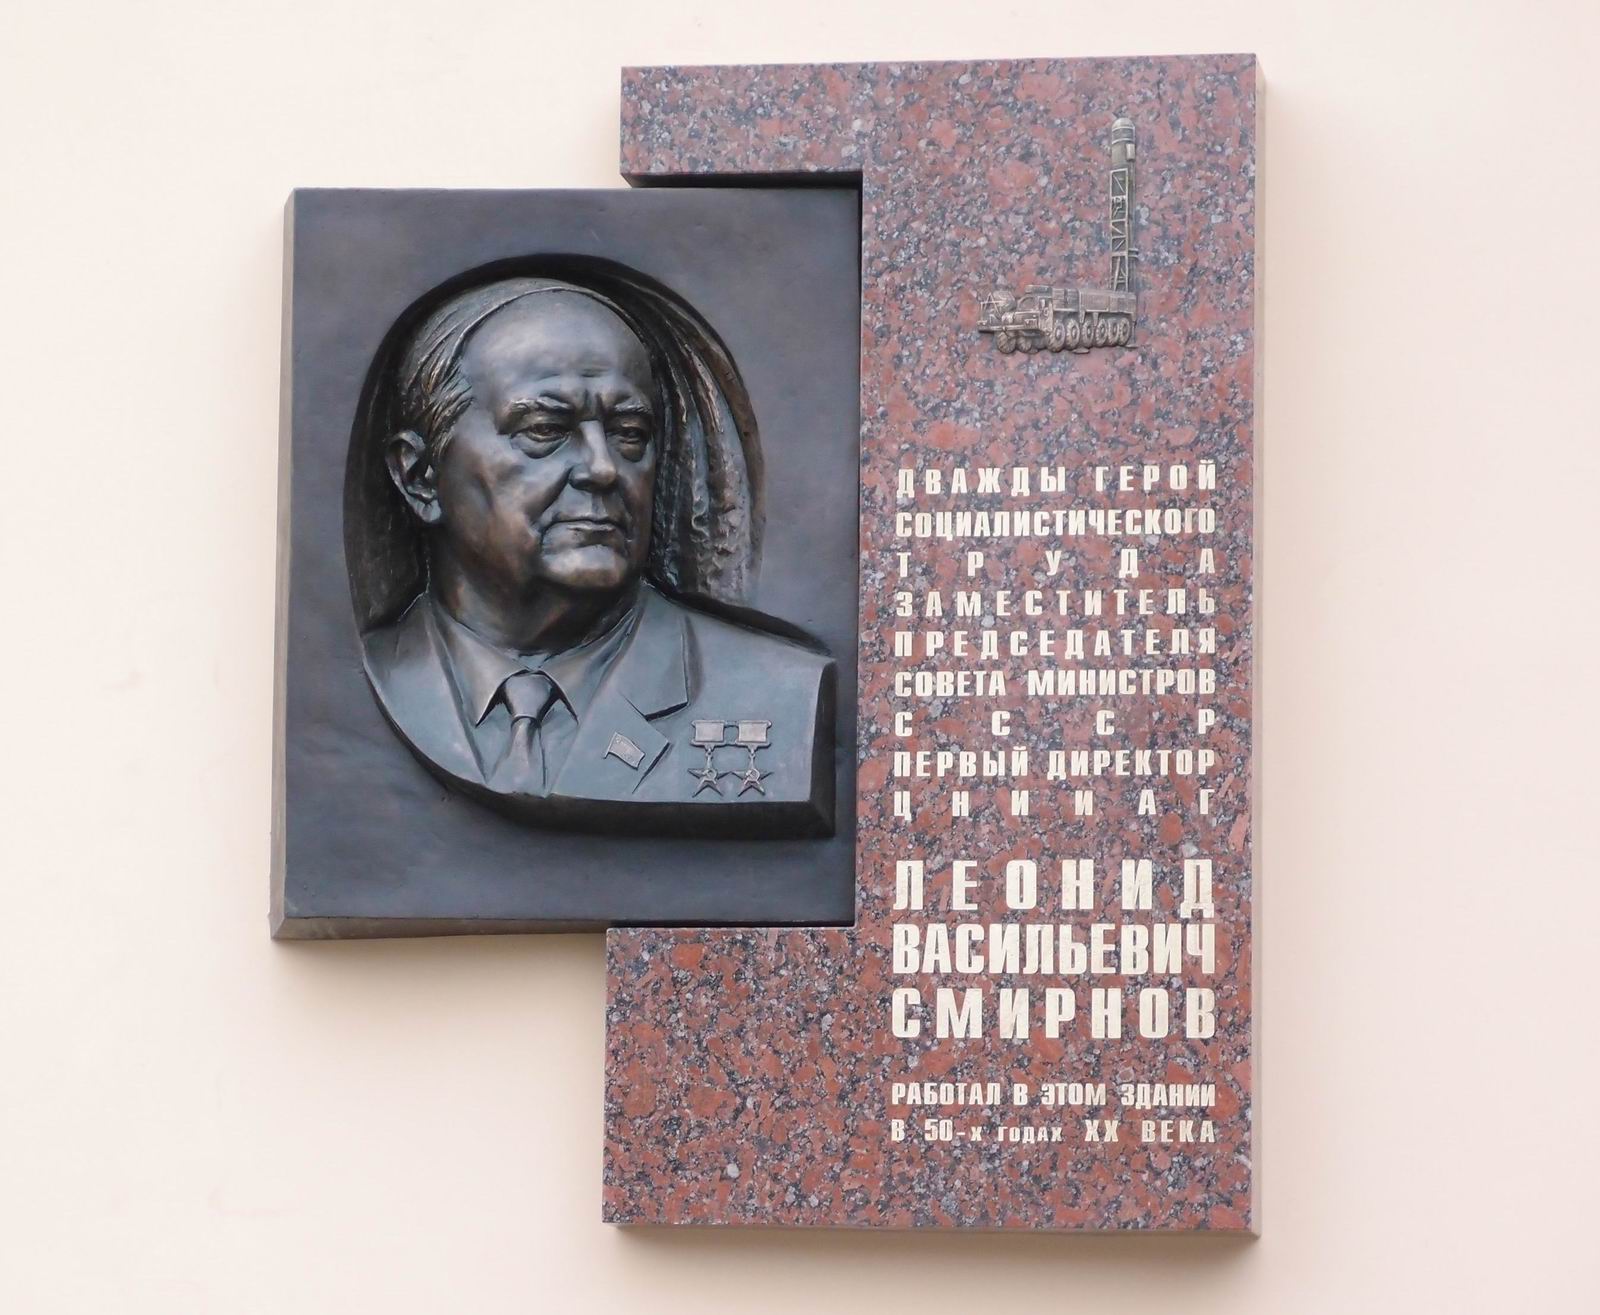 Мемориальная доска Смирнову Л.В. (1916–2001), ск. А.С.Забалуев, на улице Советской Армии, дом 5, открыта в ноябре 2018.